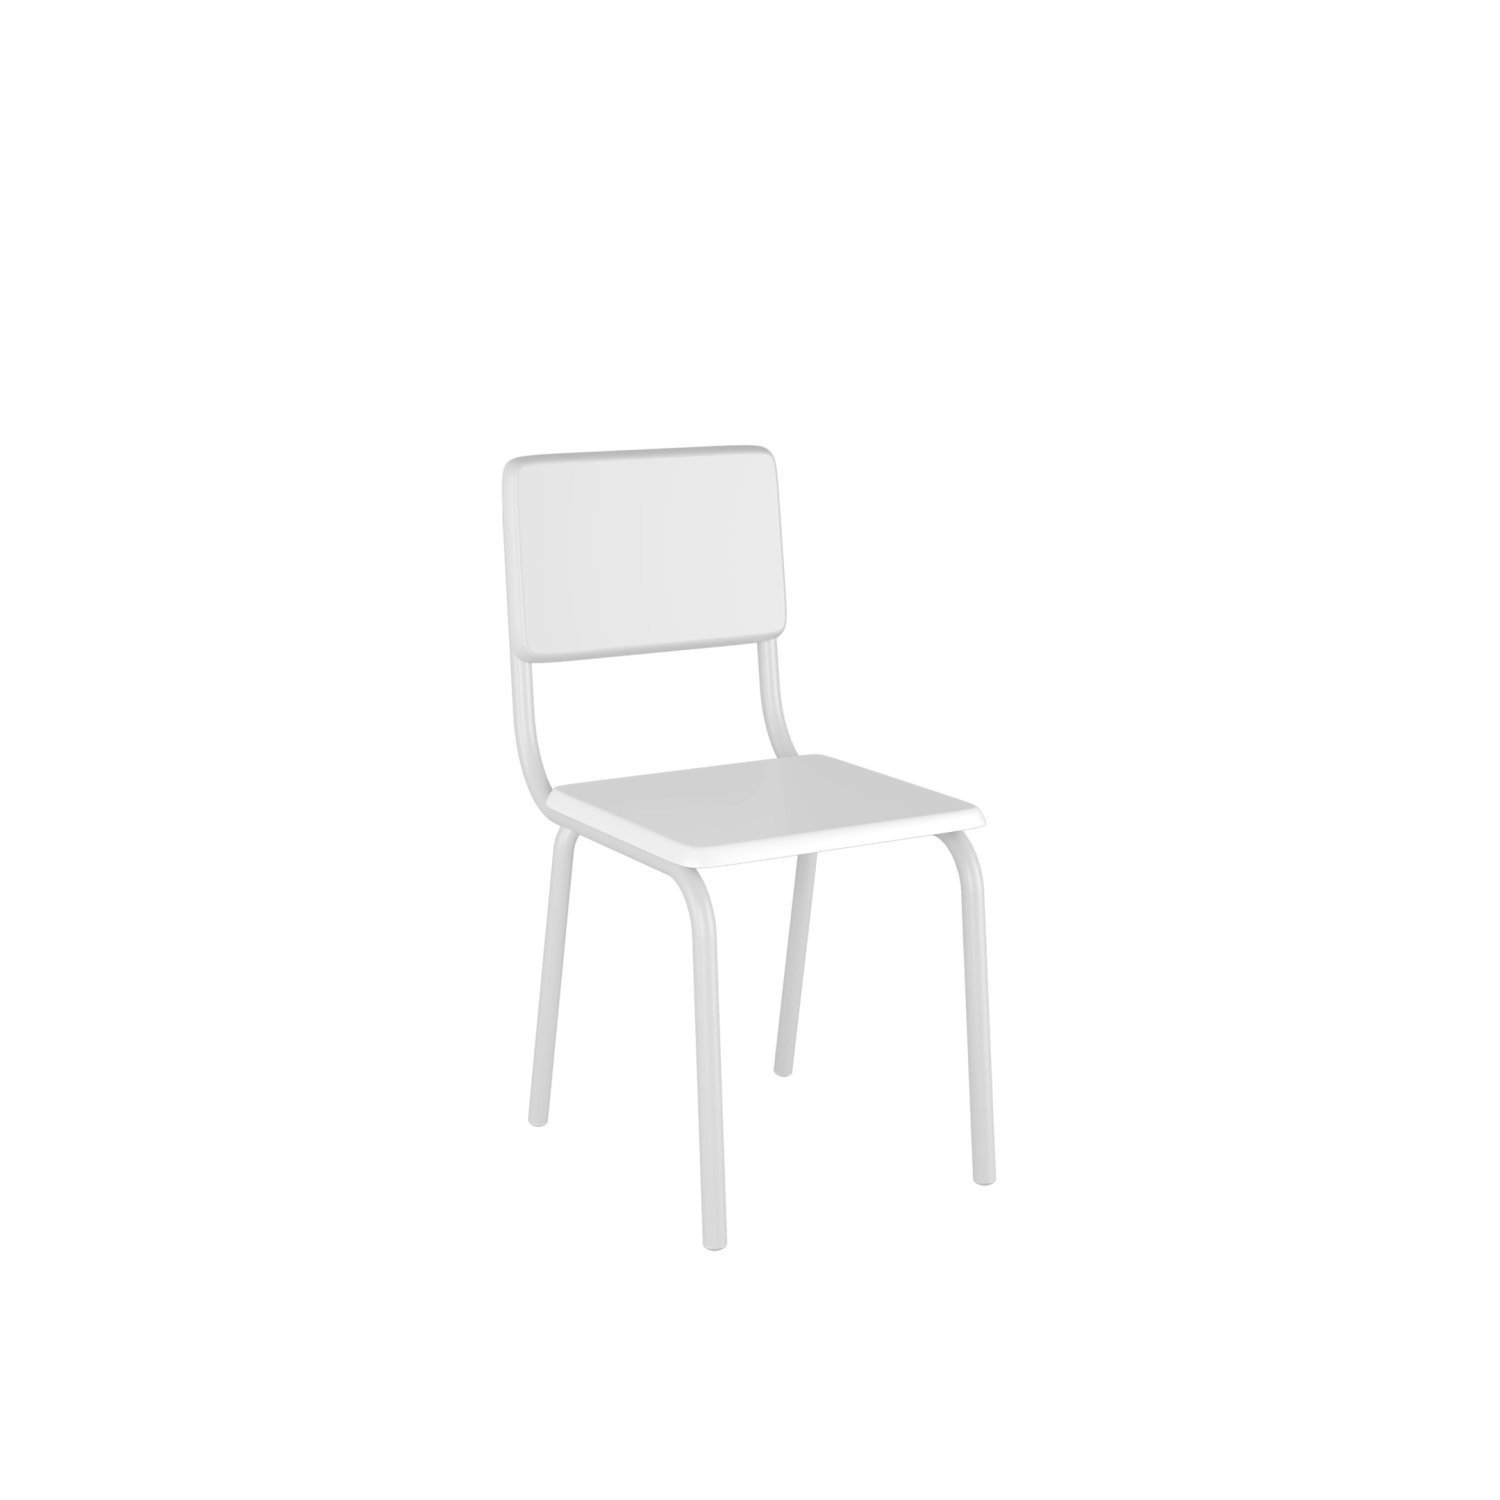 Conjunto Infantil com Mesa 75x50cm com 2 Cadeiras Laura - 6